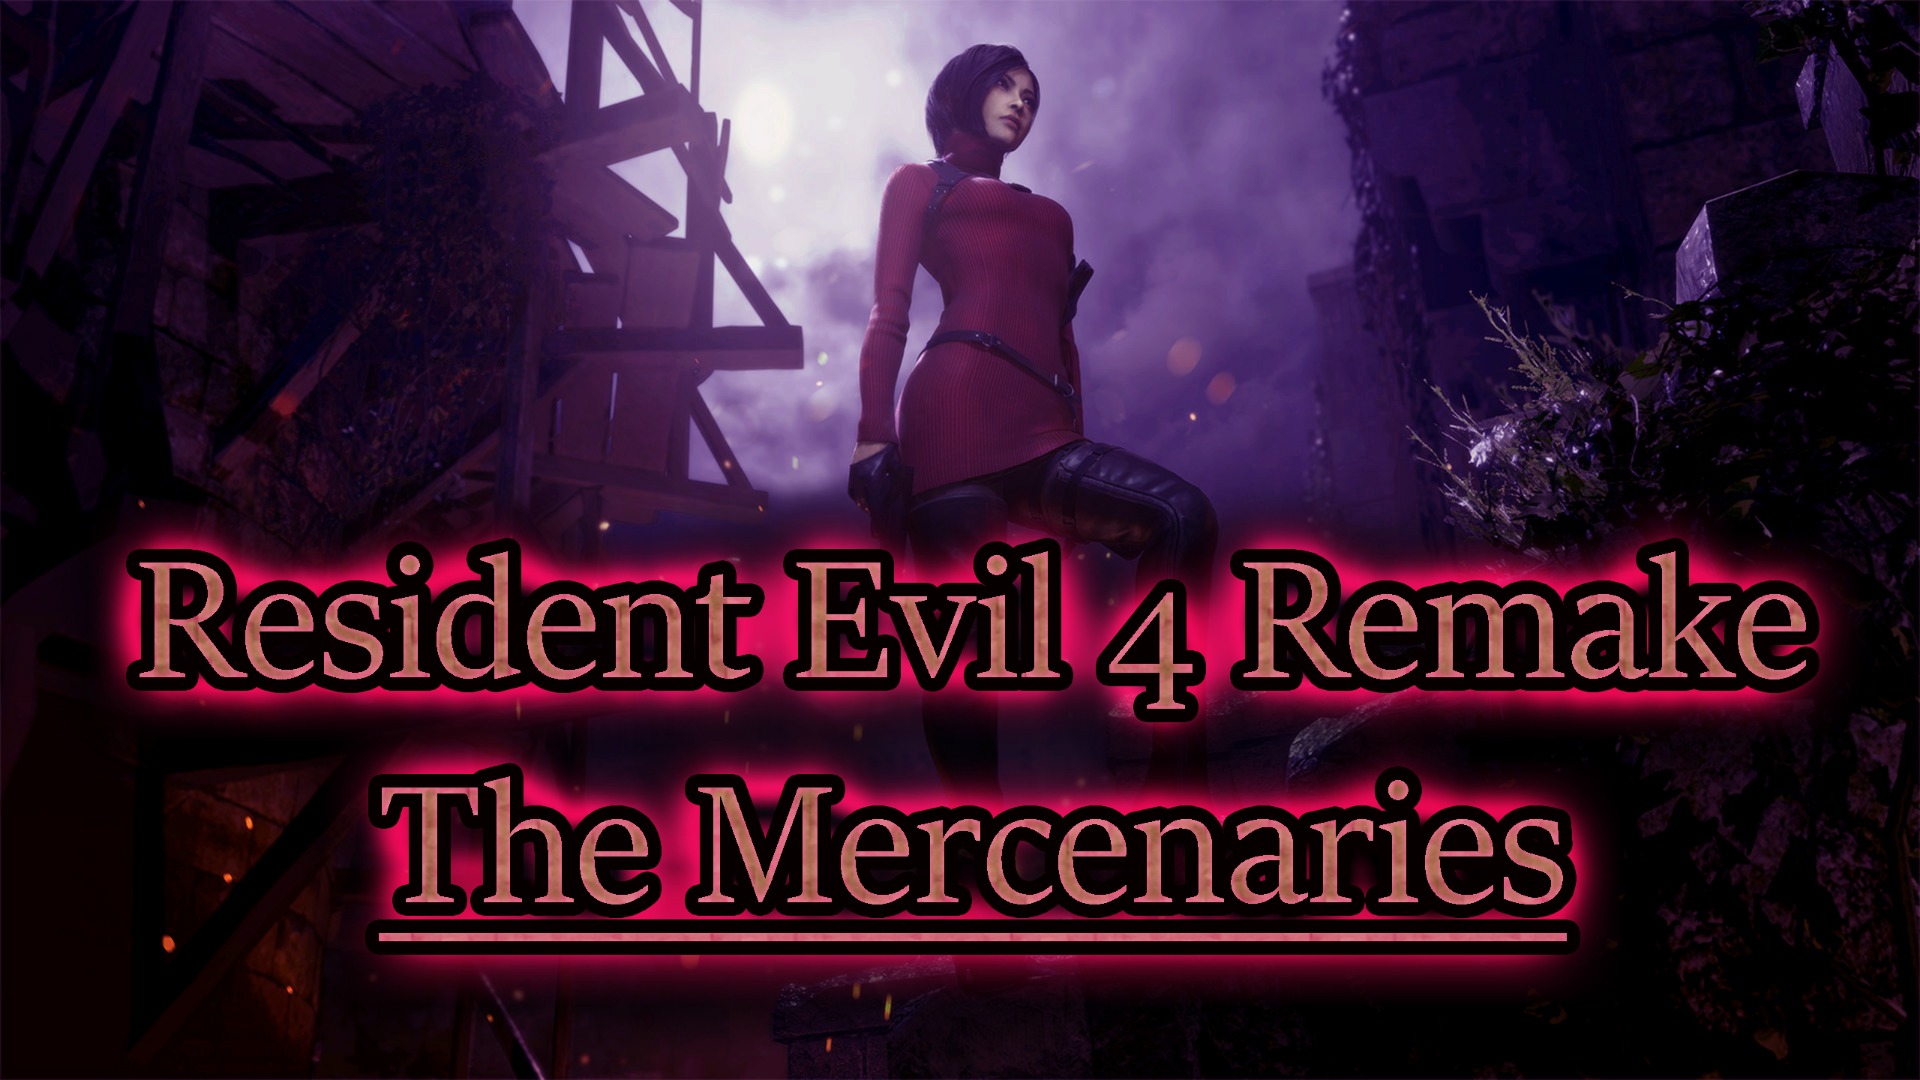 The Mercenaries ✔ Resident Evil 4 Remake